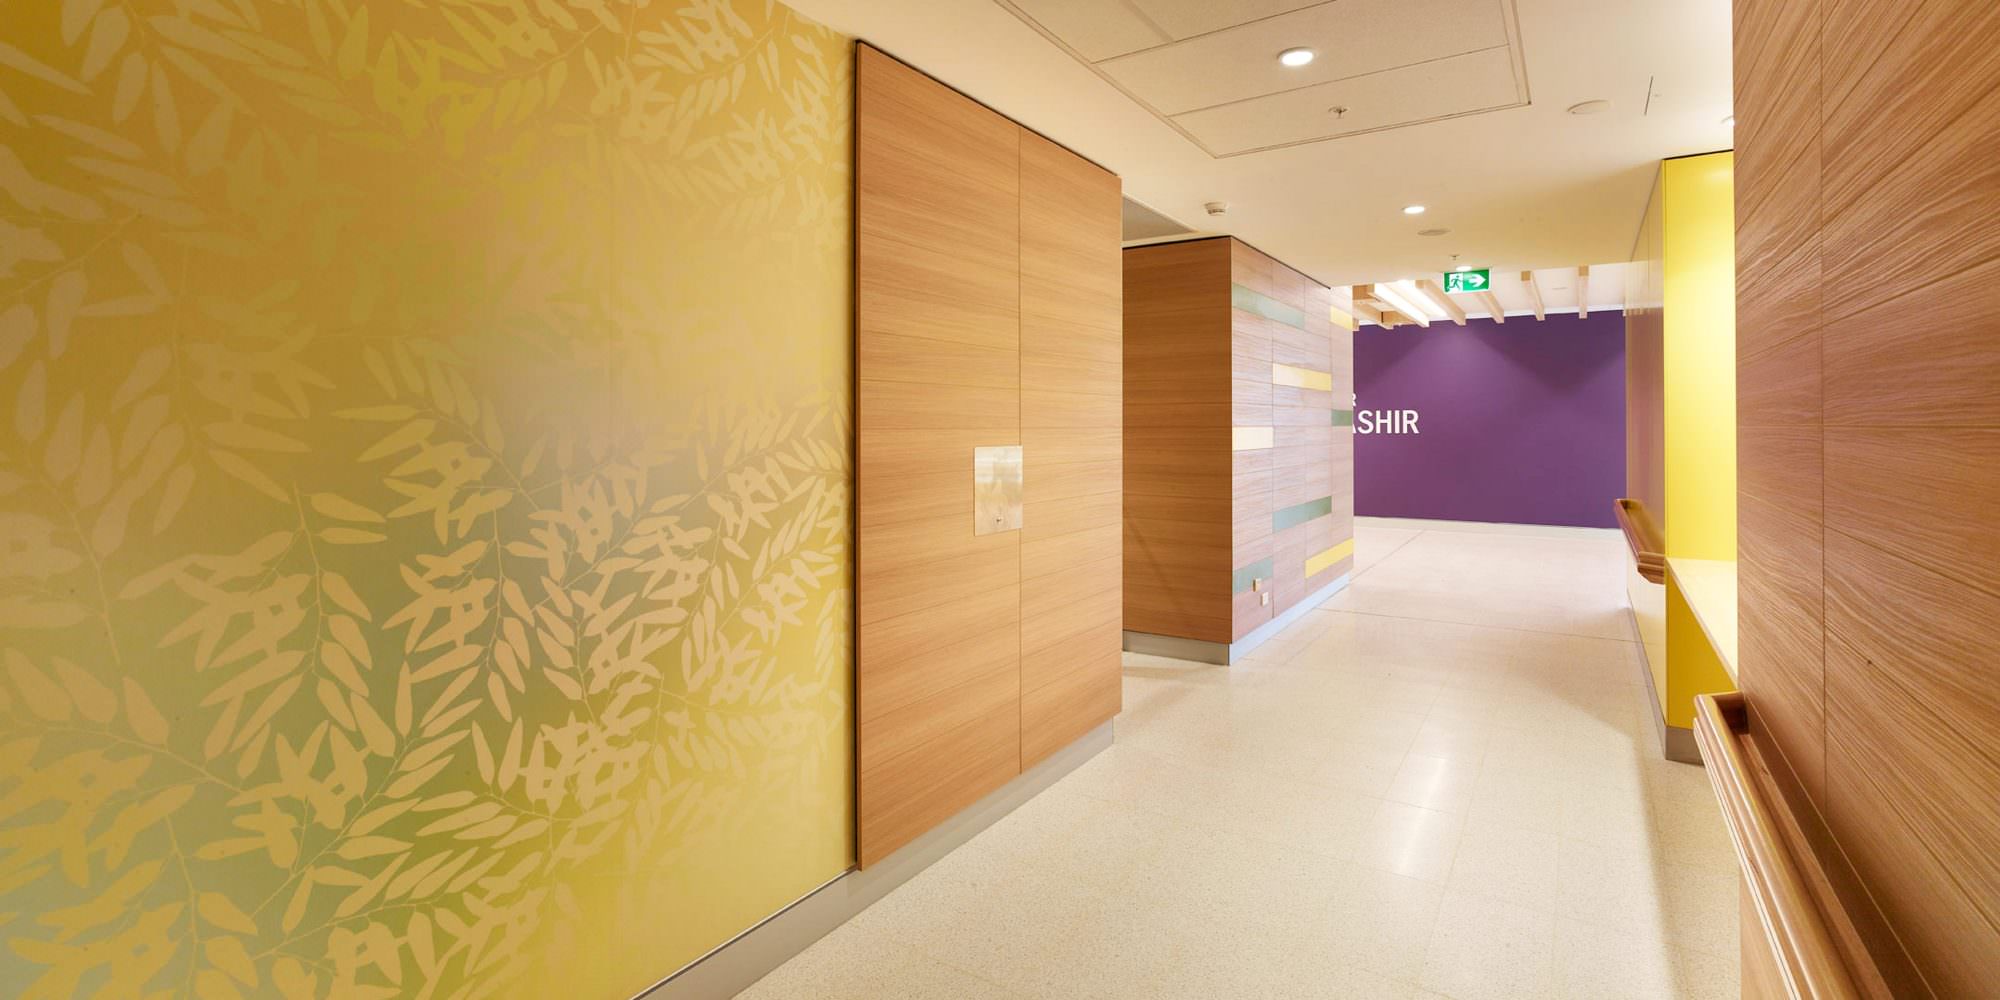 Design wallpaper in doctors' surgeries, hospitals and treatment facilities. Blog